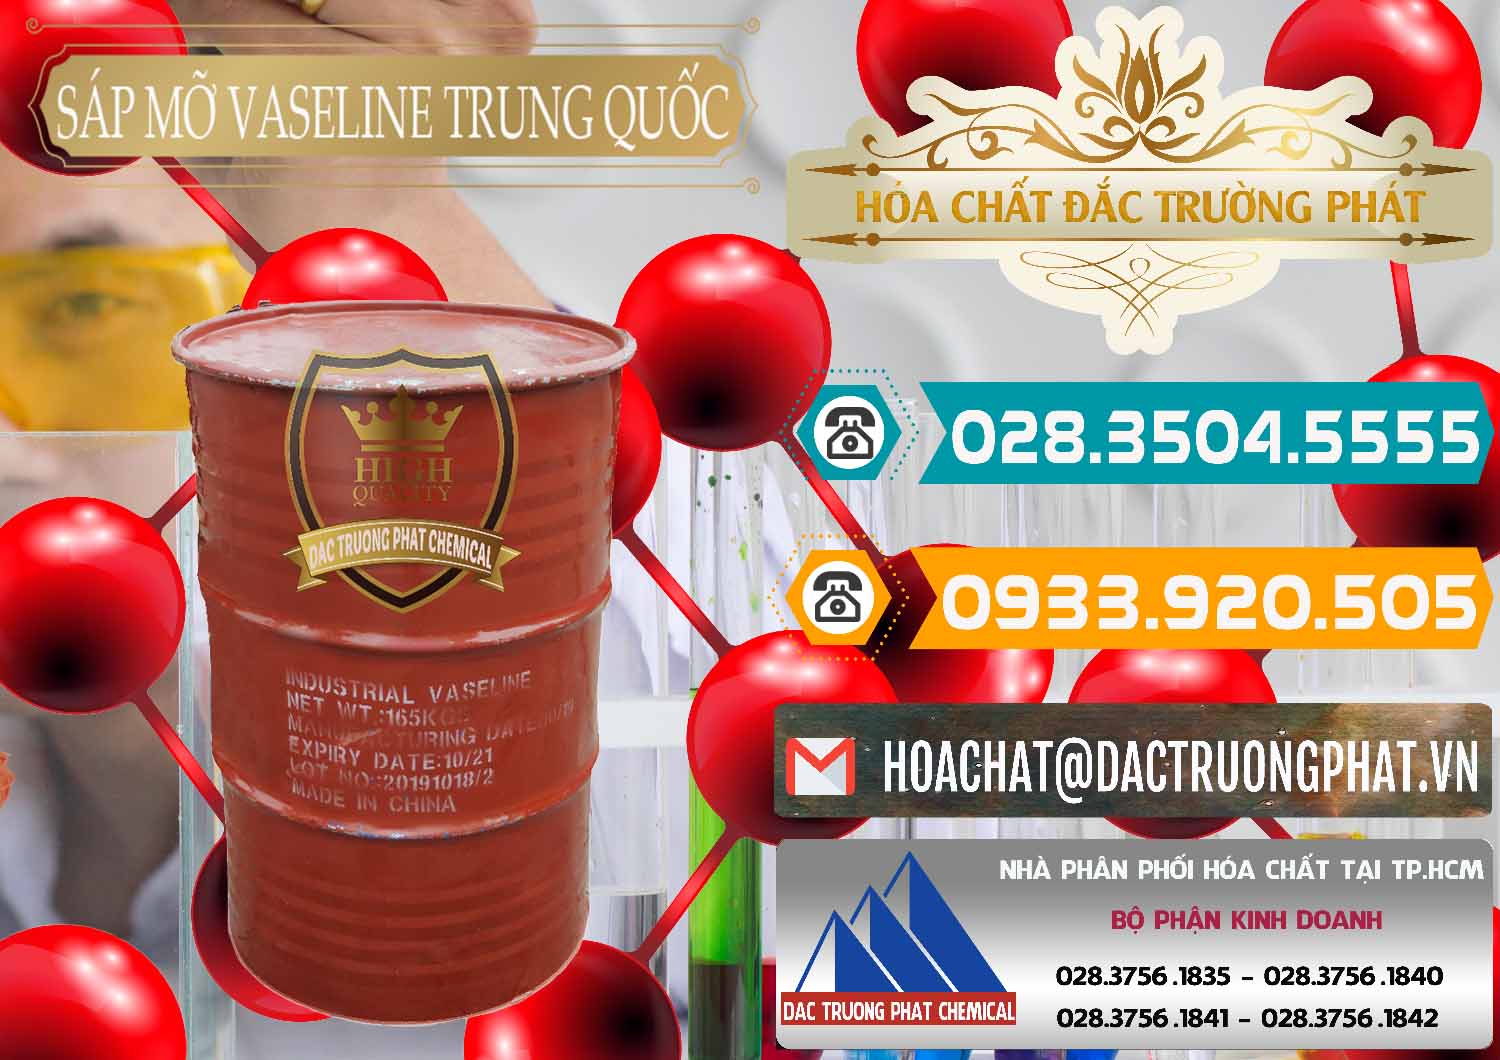 Cty chuyên kinh doanh - bán Sáp Mỡ Vaseline Trung Quốc China - 0122 - Chuyên cung cấp _ phân phối hóa chất tại TP.HCM - congtyhoachat.vn